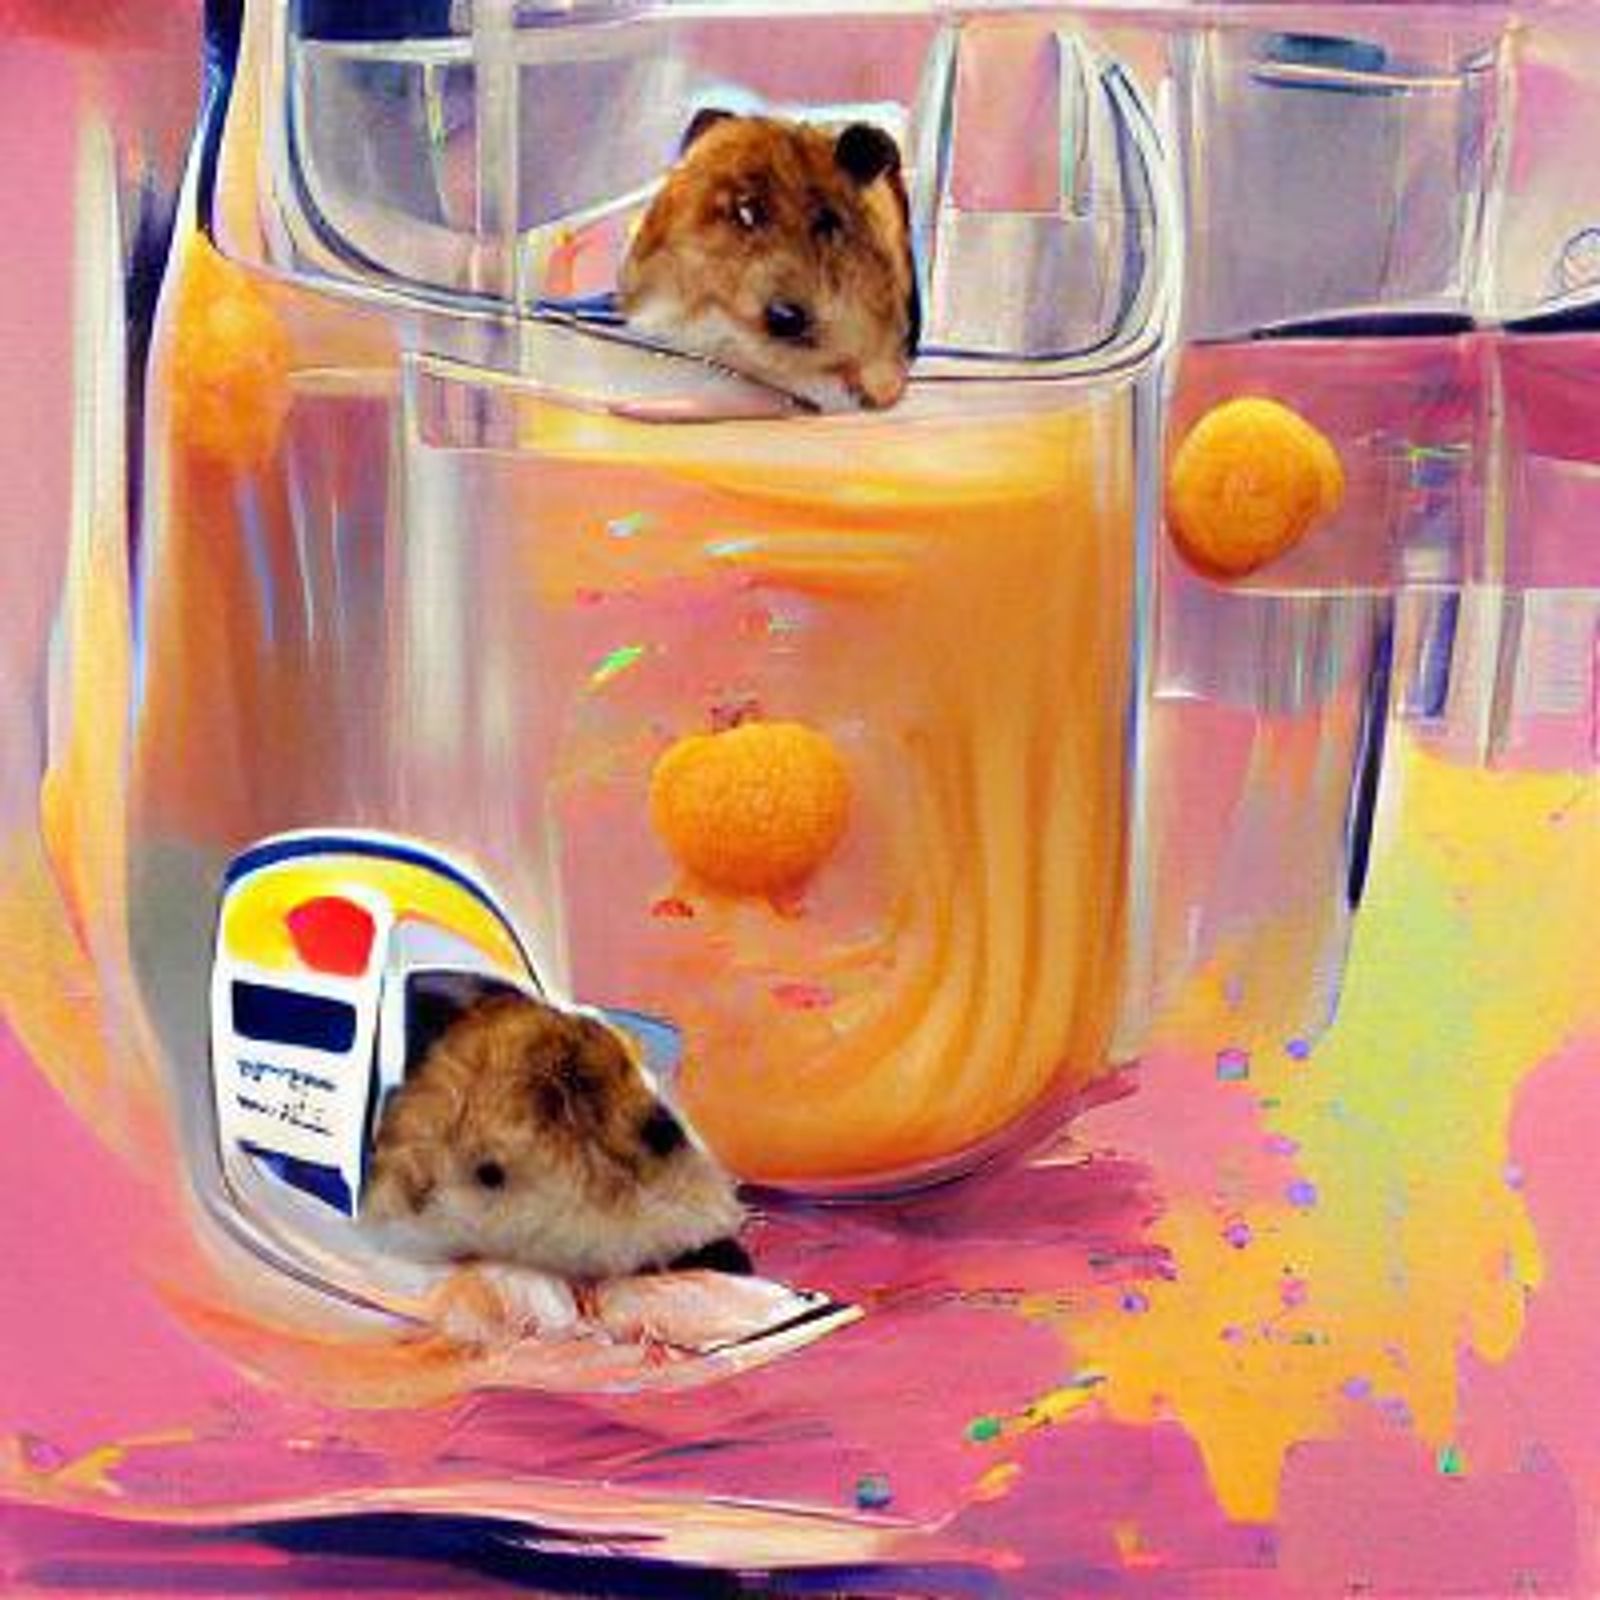 hamster drinking